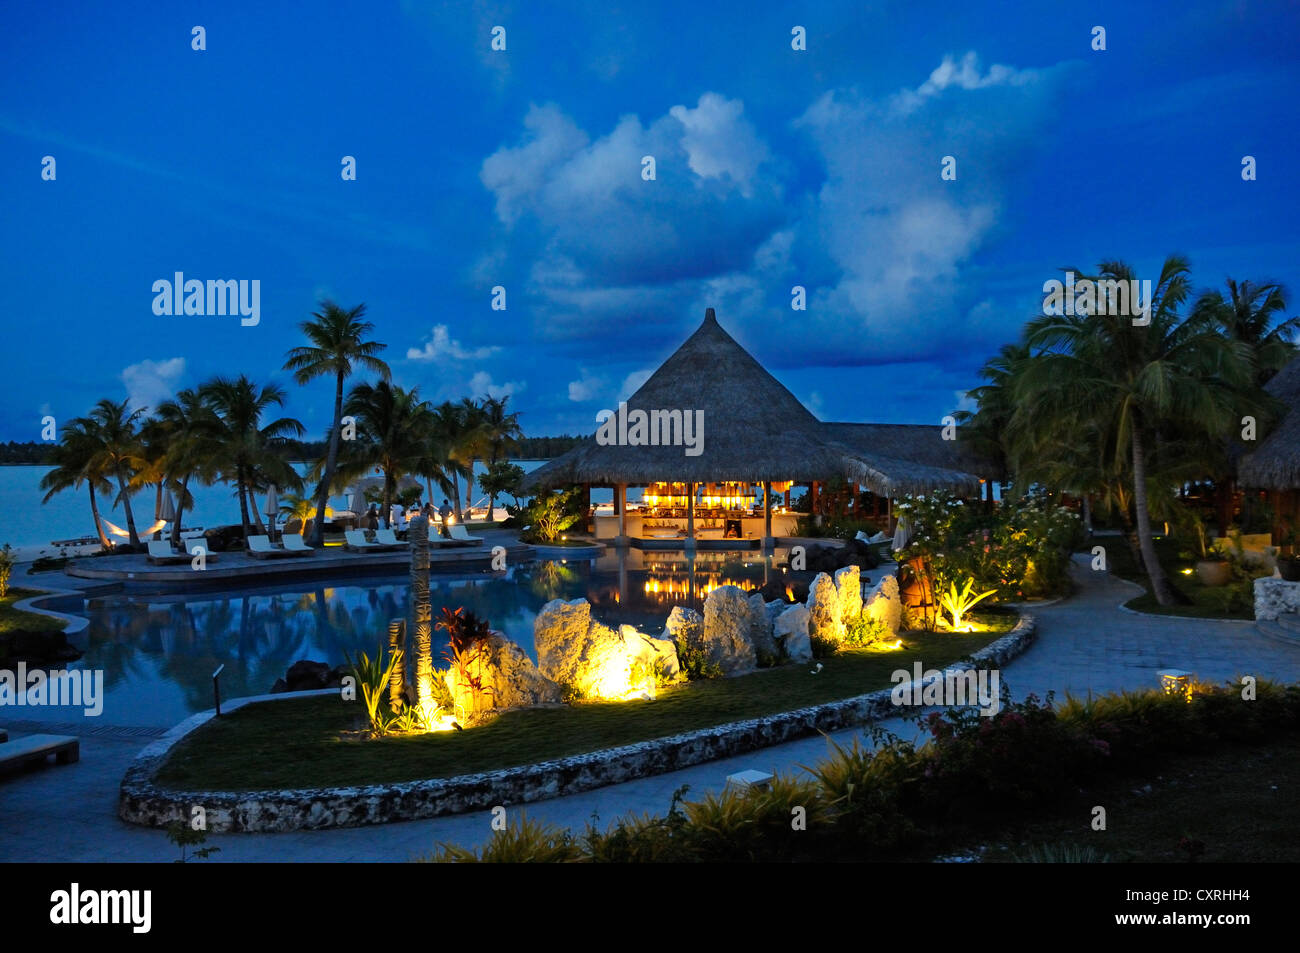 Il St. Regis Bora Bora Resort al crepuscolo, Bora Bora, Leeward Islands, Isole della Società, Polinesia francese, Oceano Pacifico Foto Stock